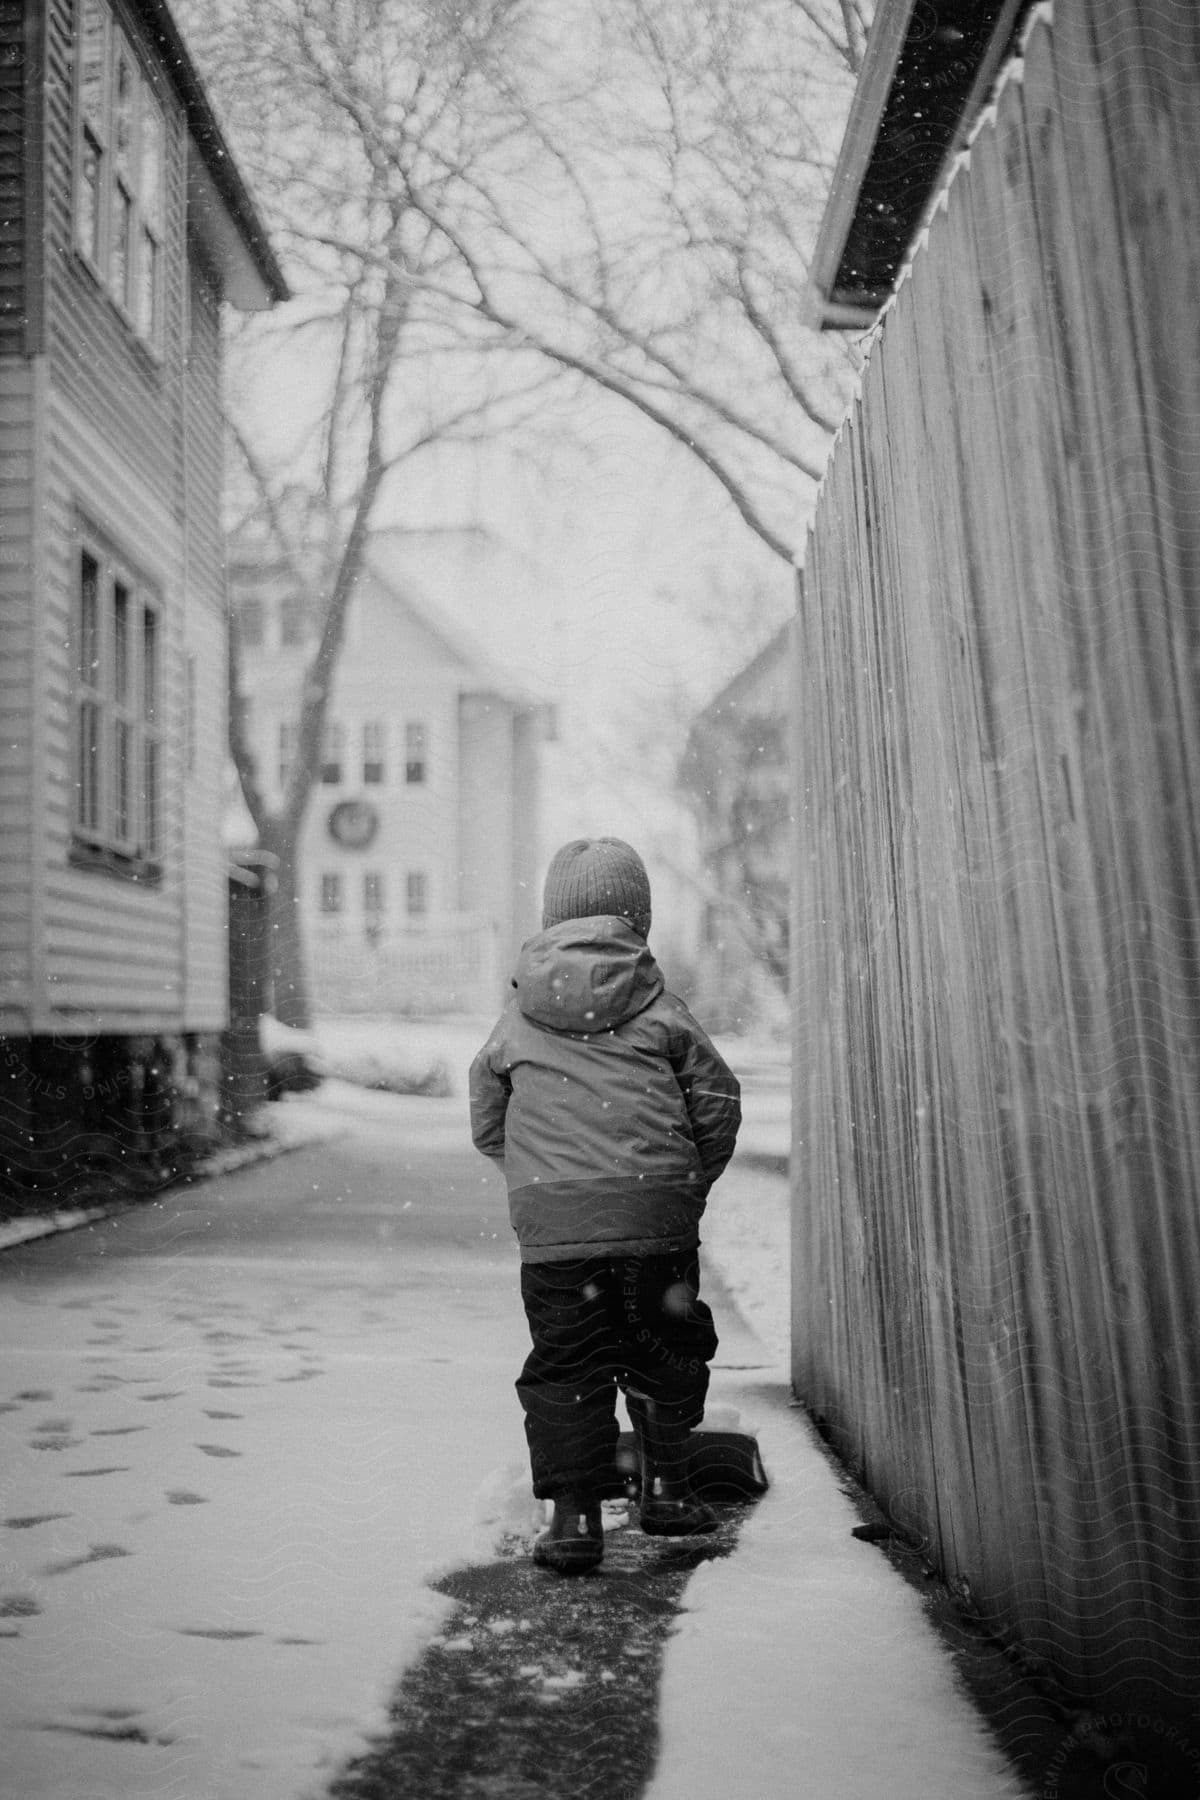 A boy is walking in the snow.